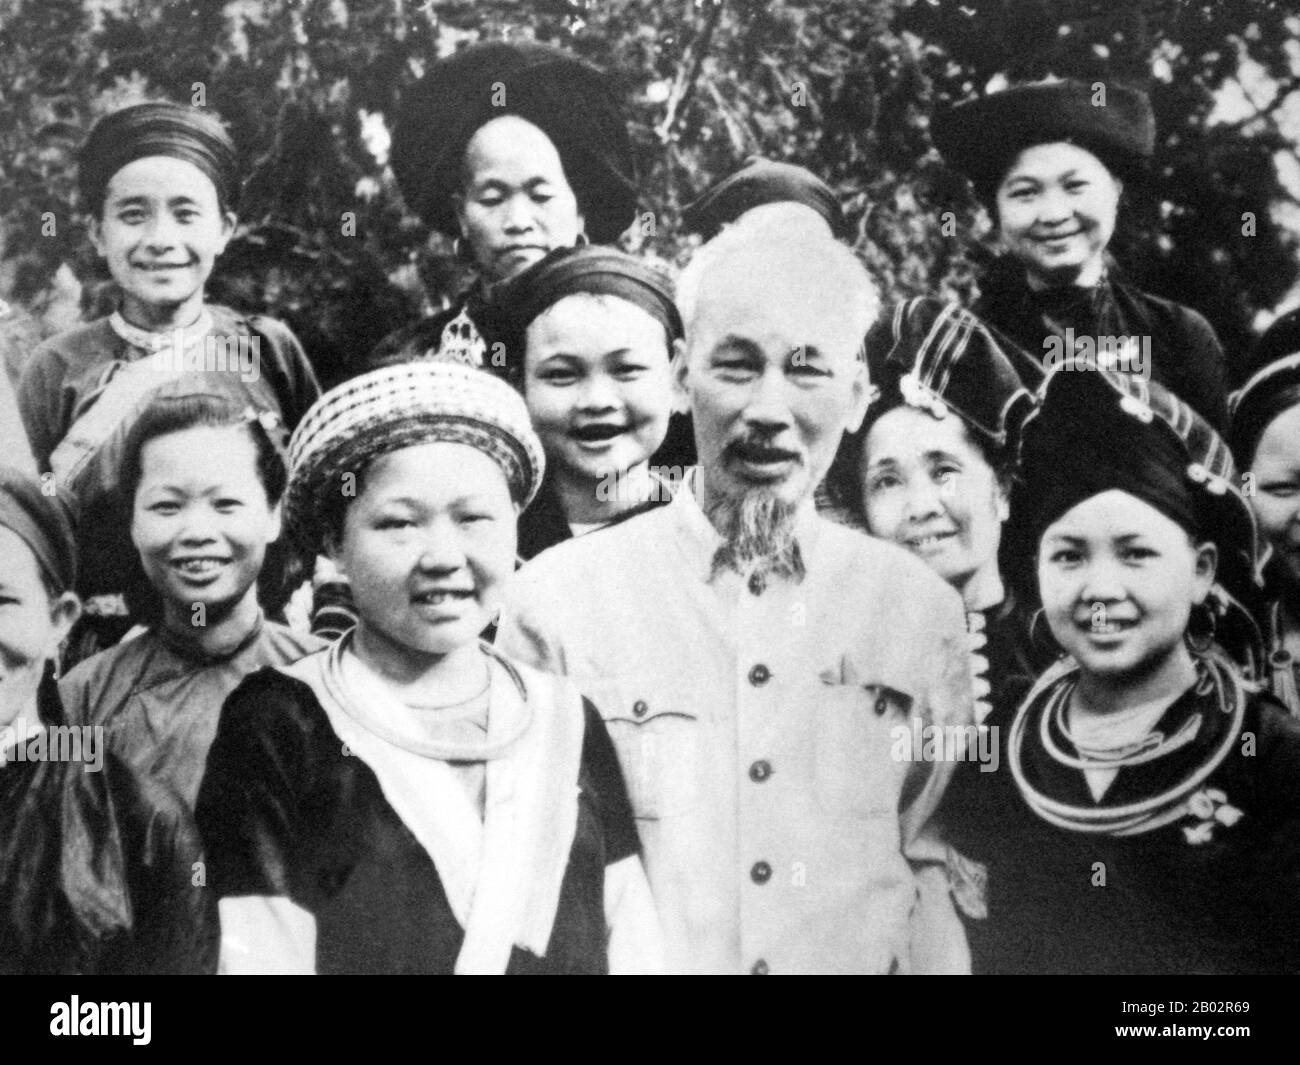 Hồ Chí Minh, né à Nguyễn Sinh Cung et également connu sous le nom de Nguyễn Ái Quốc (19 mai 1890 – 3 septembre 1969) était un leader révolutionnaire communiste vietnamien qui était Premier ministre (1946–1955) et président (1945–1969) de la République démocratique du Vietnam (Nord Vietnam). Il a formé la République démocratique du Vietnam et dirigé le Viet Cong pendant la guerre du Vietnam jusqu'à sa mort. Hồ a dirigé le mouvement d'indépendance du Viet Minh à partir de 1941, établissant la République démocratique du Vietnam gouvernée par les communistes en 1945 et battant l'Union française en 1954 à Dien bien Phu. Il a perdu le pouvoir politique à l'intérieur De Nor Banque D'Images